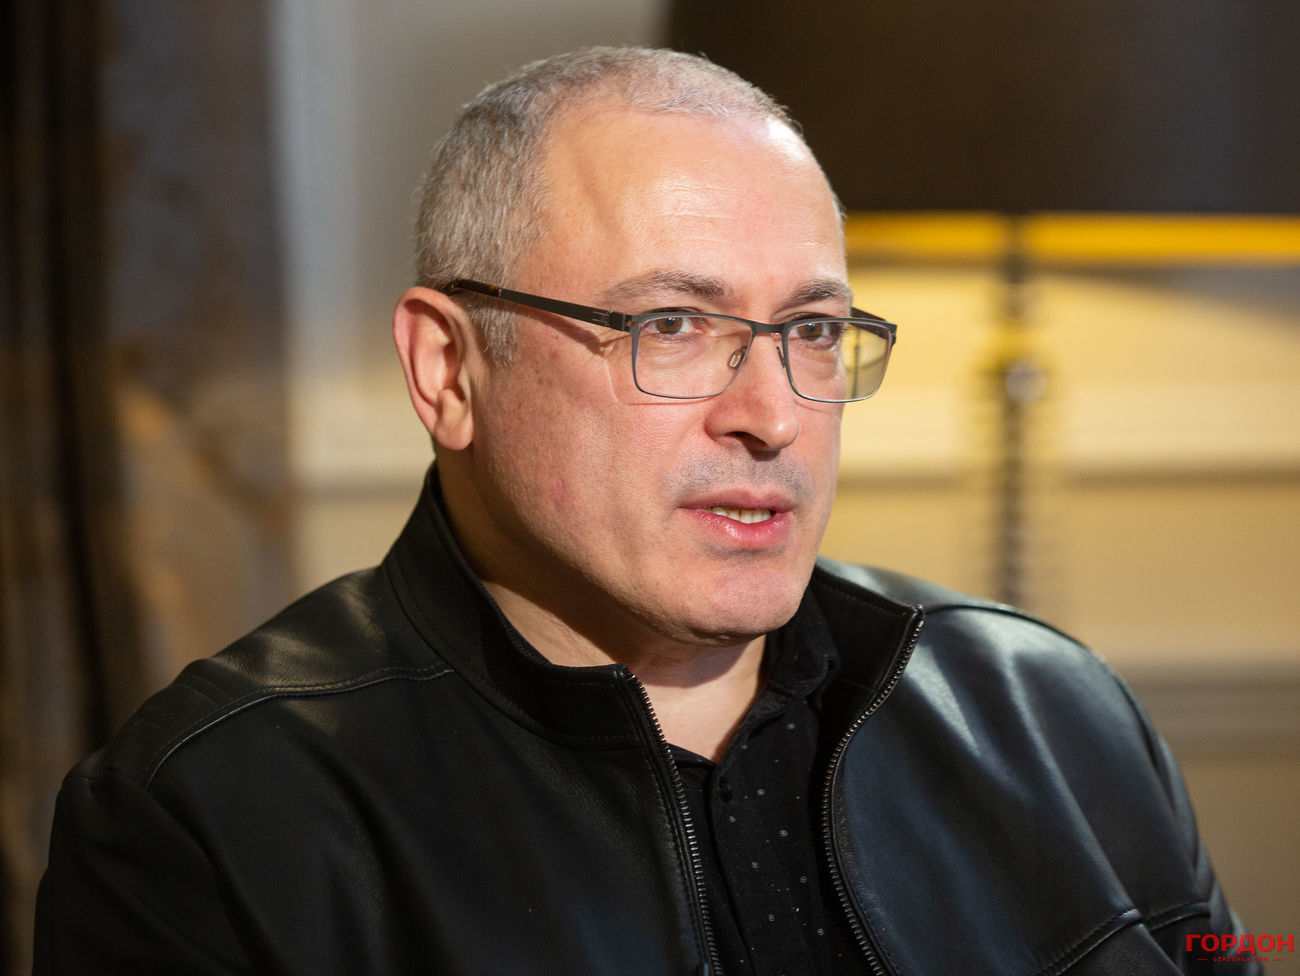 МВД России повторно объявило в розыск Михаила Ходорковского